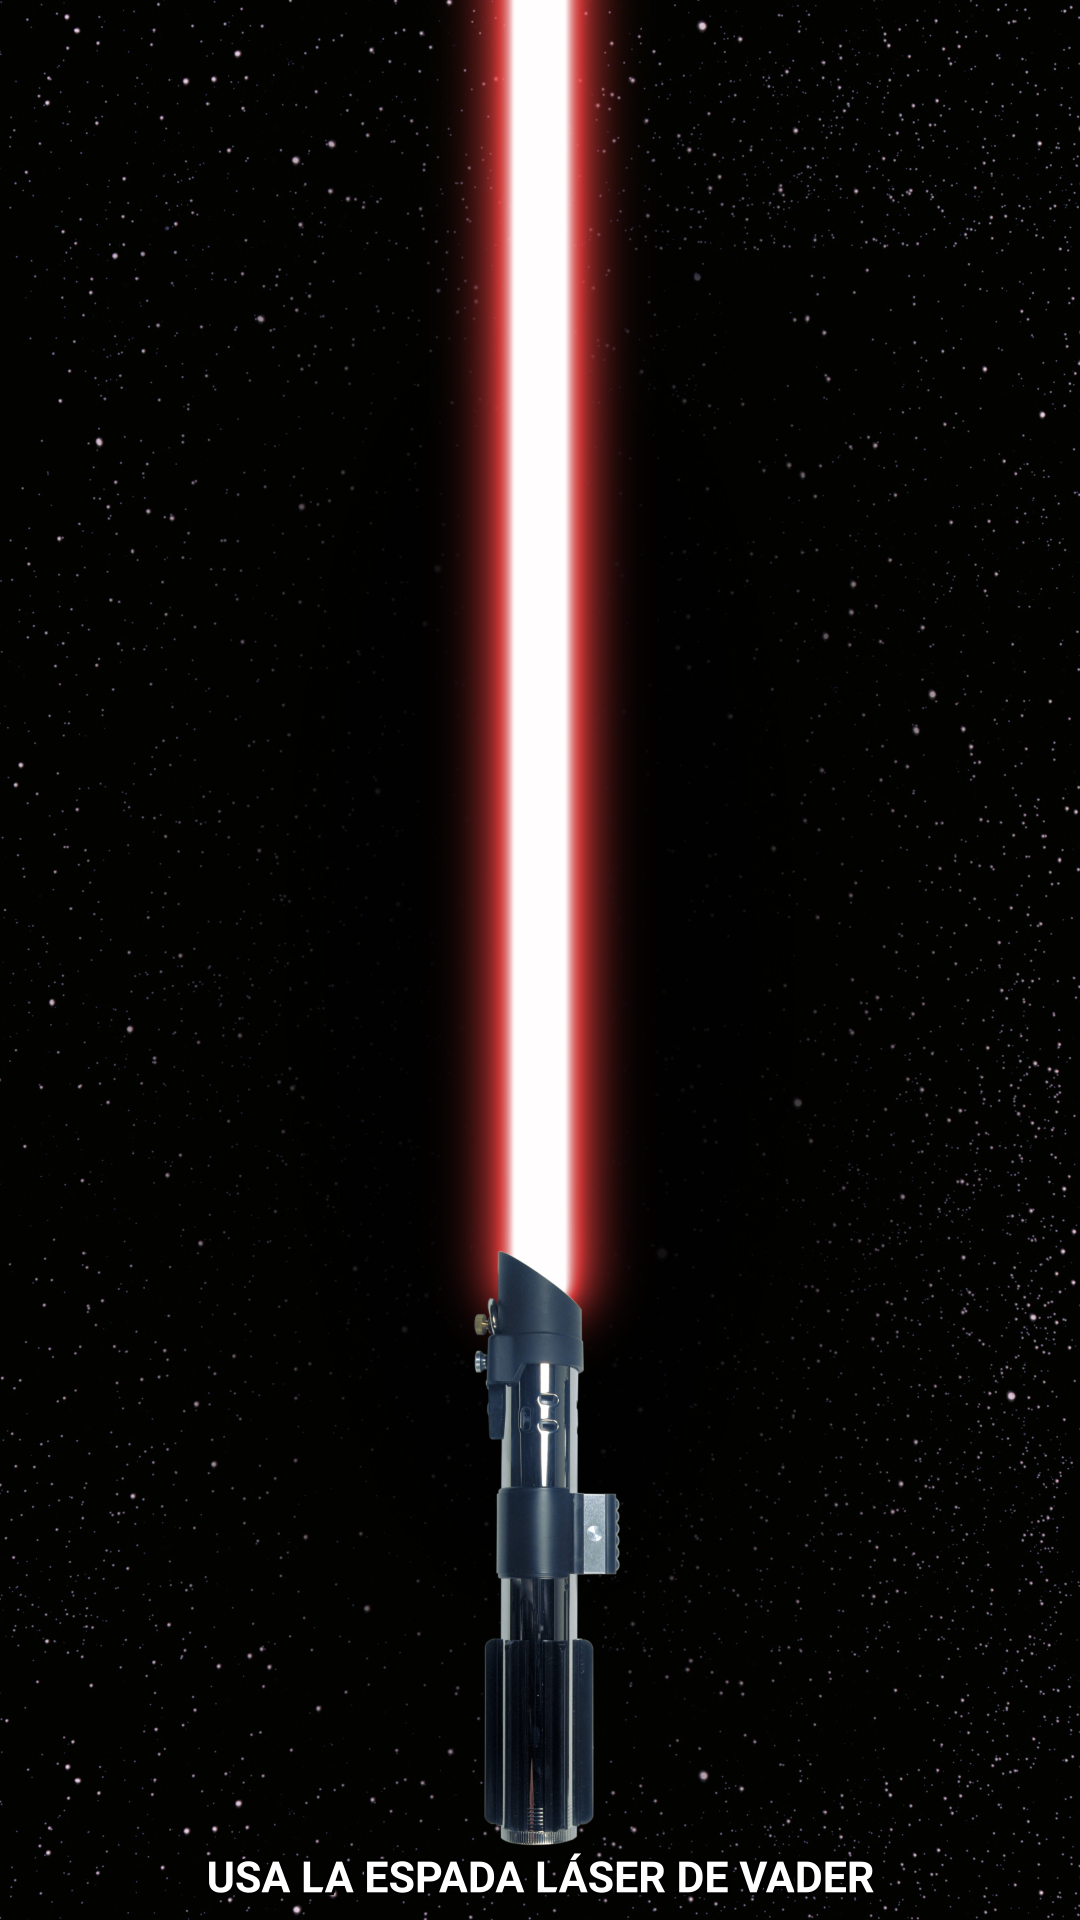 Star Wars España on X: Haz tap para usar la espada láser de Darth Vader.   / X